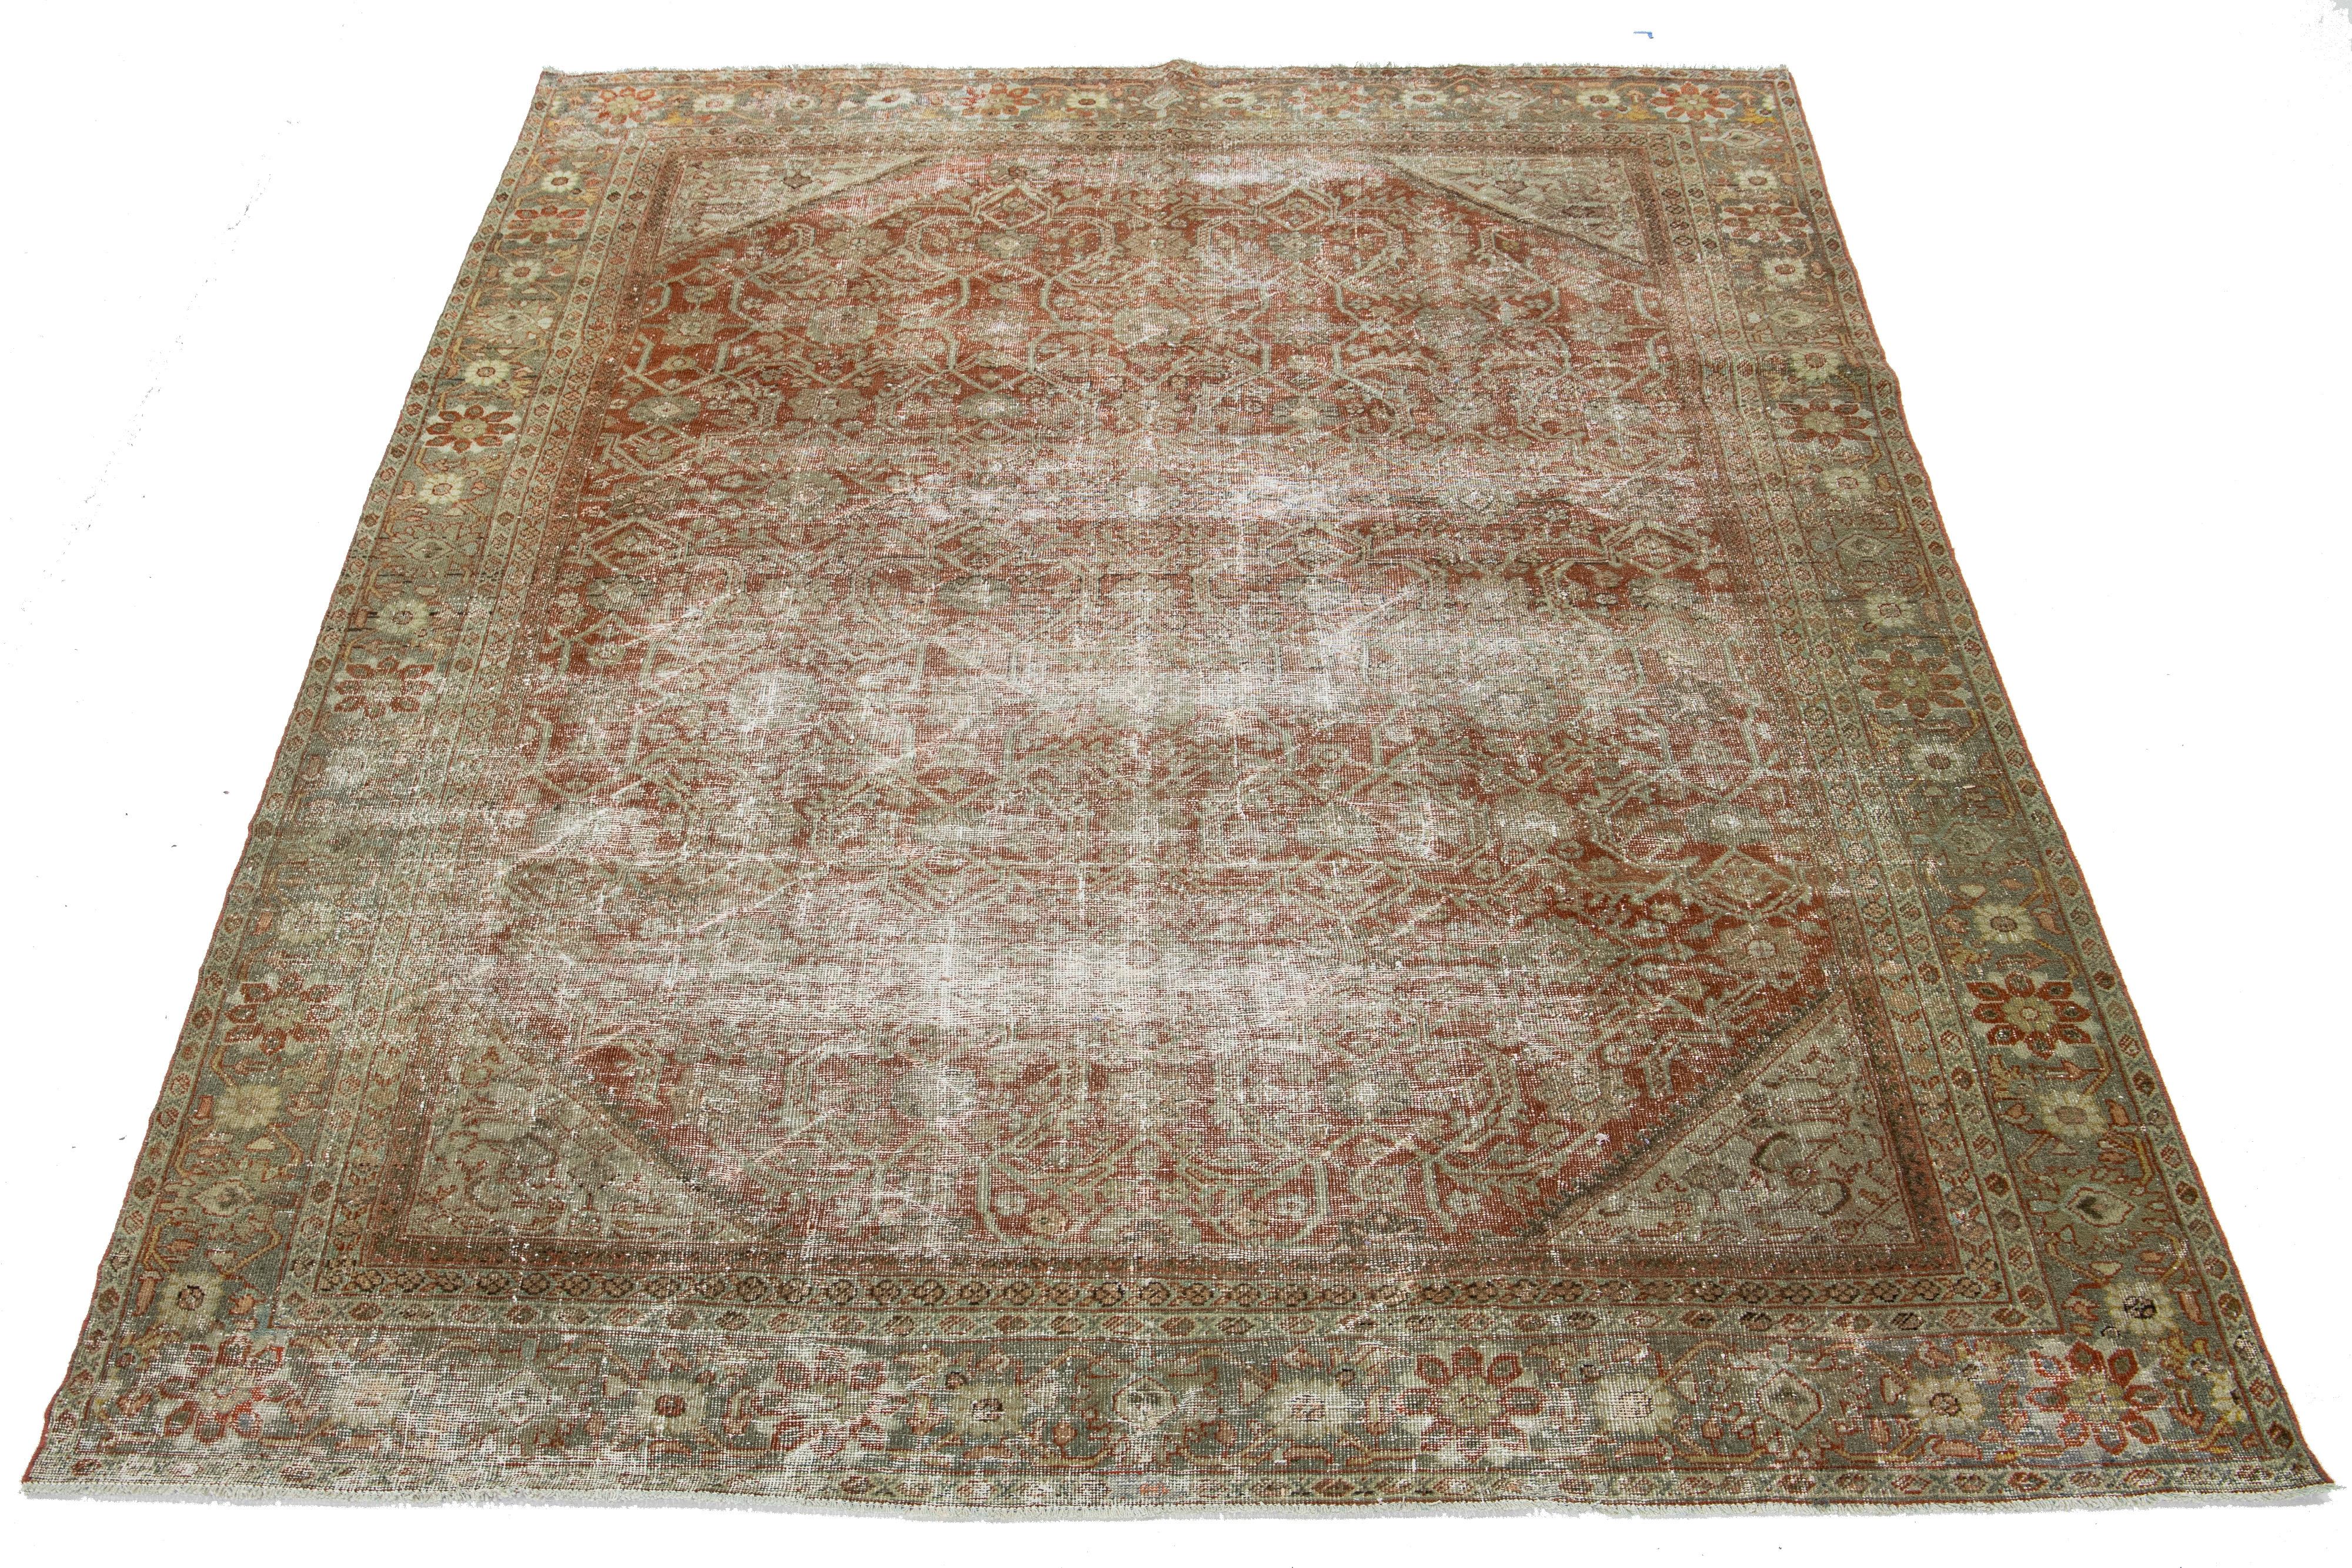 Ce tapis antique Mahal en laine nouée à la main présente un motif all-over avec des accents bleus, bruns et beiges sur un champ de couleur rouille.

Ce tapis mesure 8'2